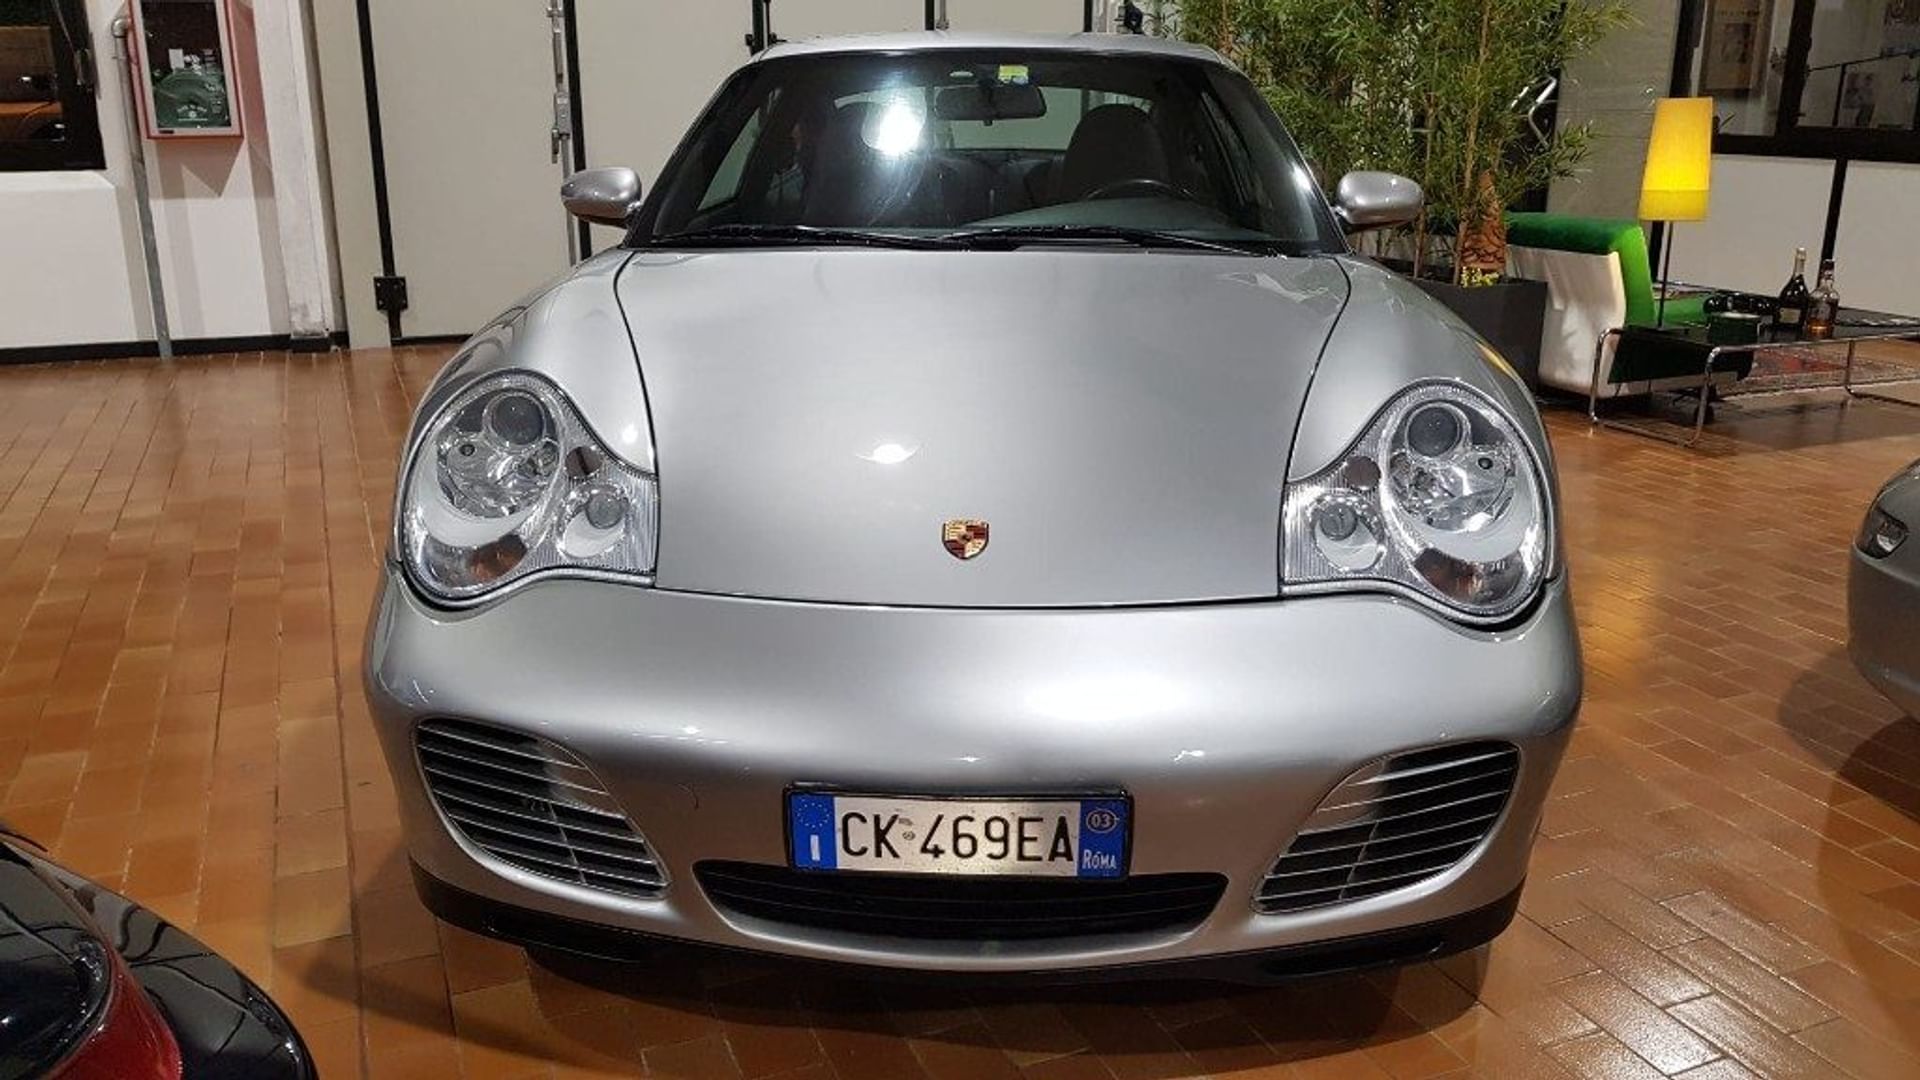 Porsche 911 911 (996)